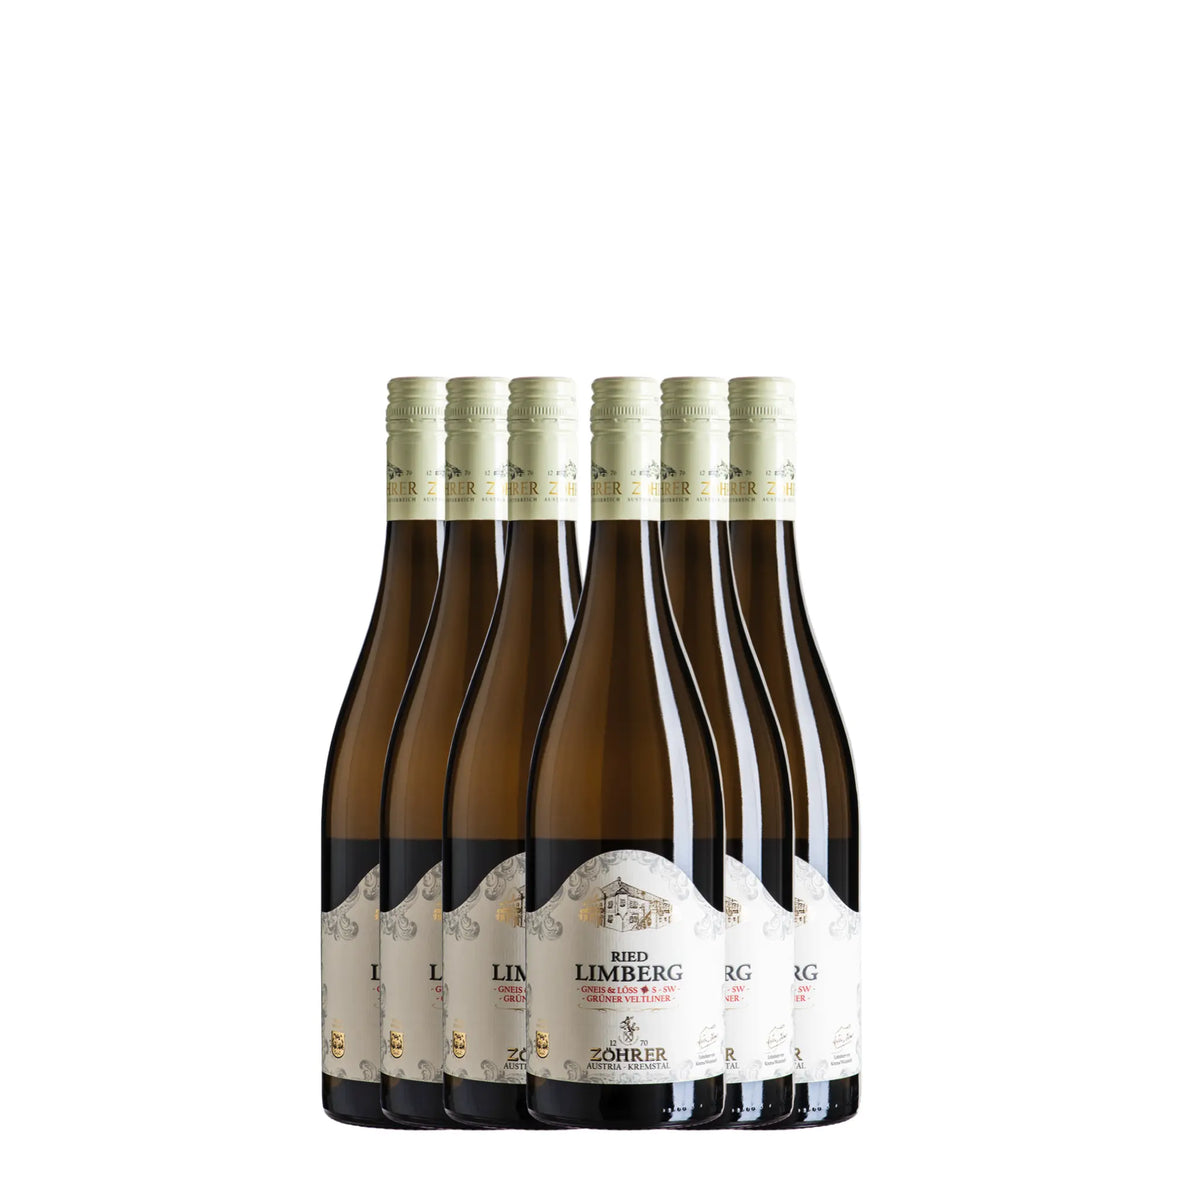 Weingut Anton Zöhrer-Weißwein-Grüner Veltliner-Österreich-Kremstal-2022 Ried Limberg Grüner Veltliner trocken [6 Flaschen]-WINECOM